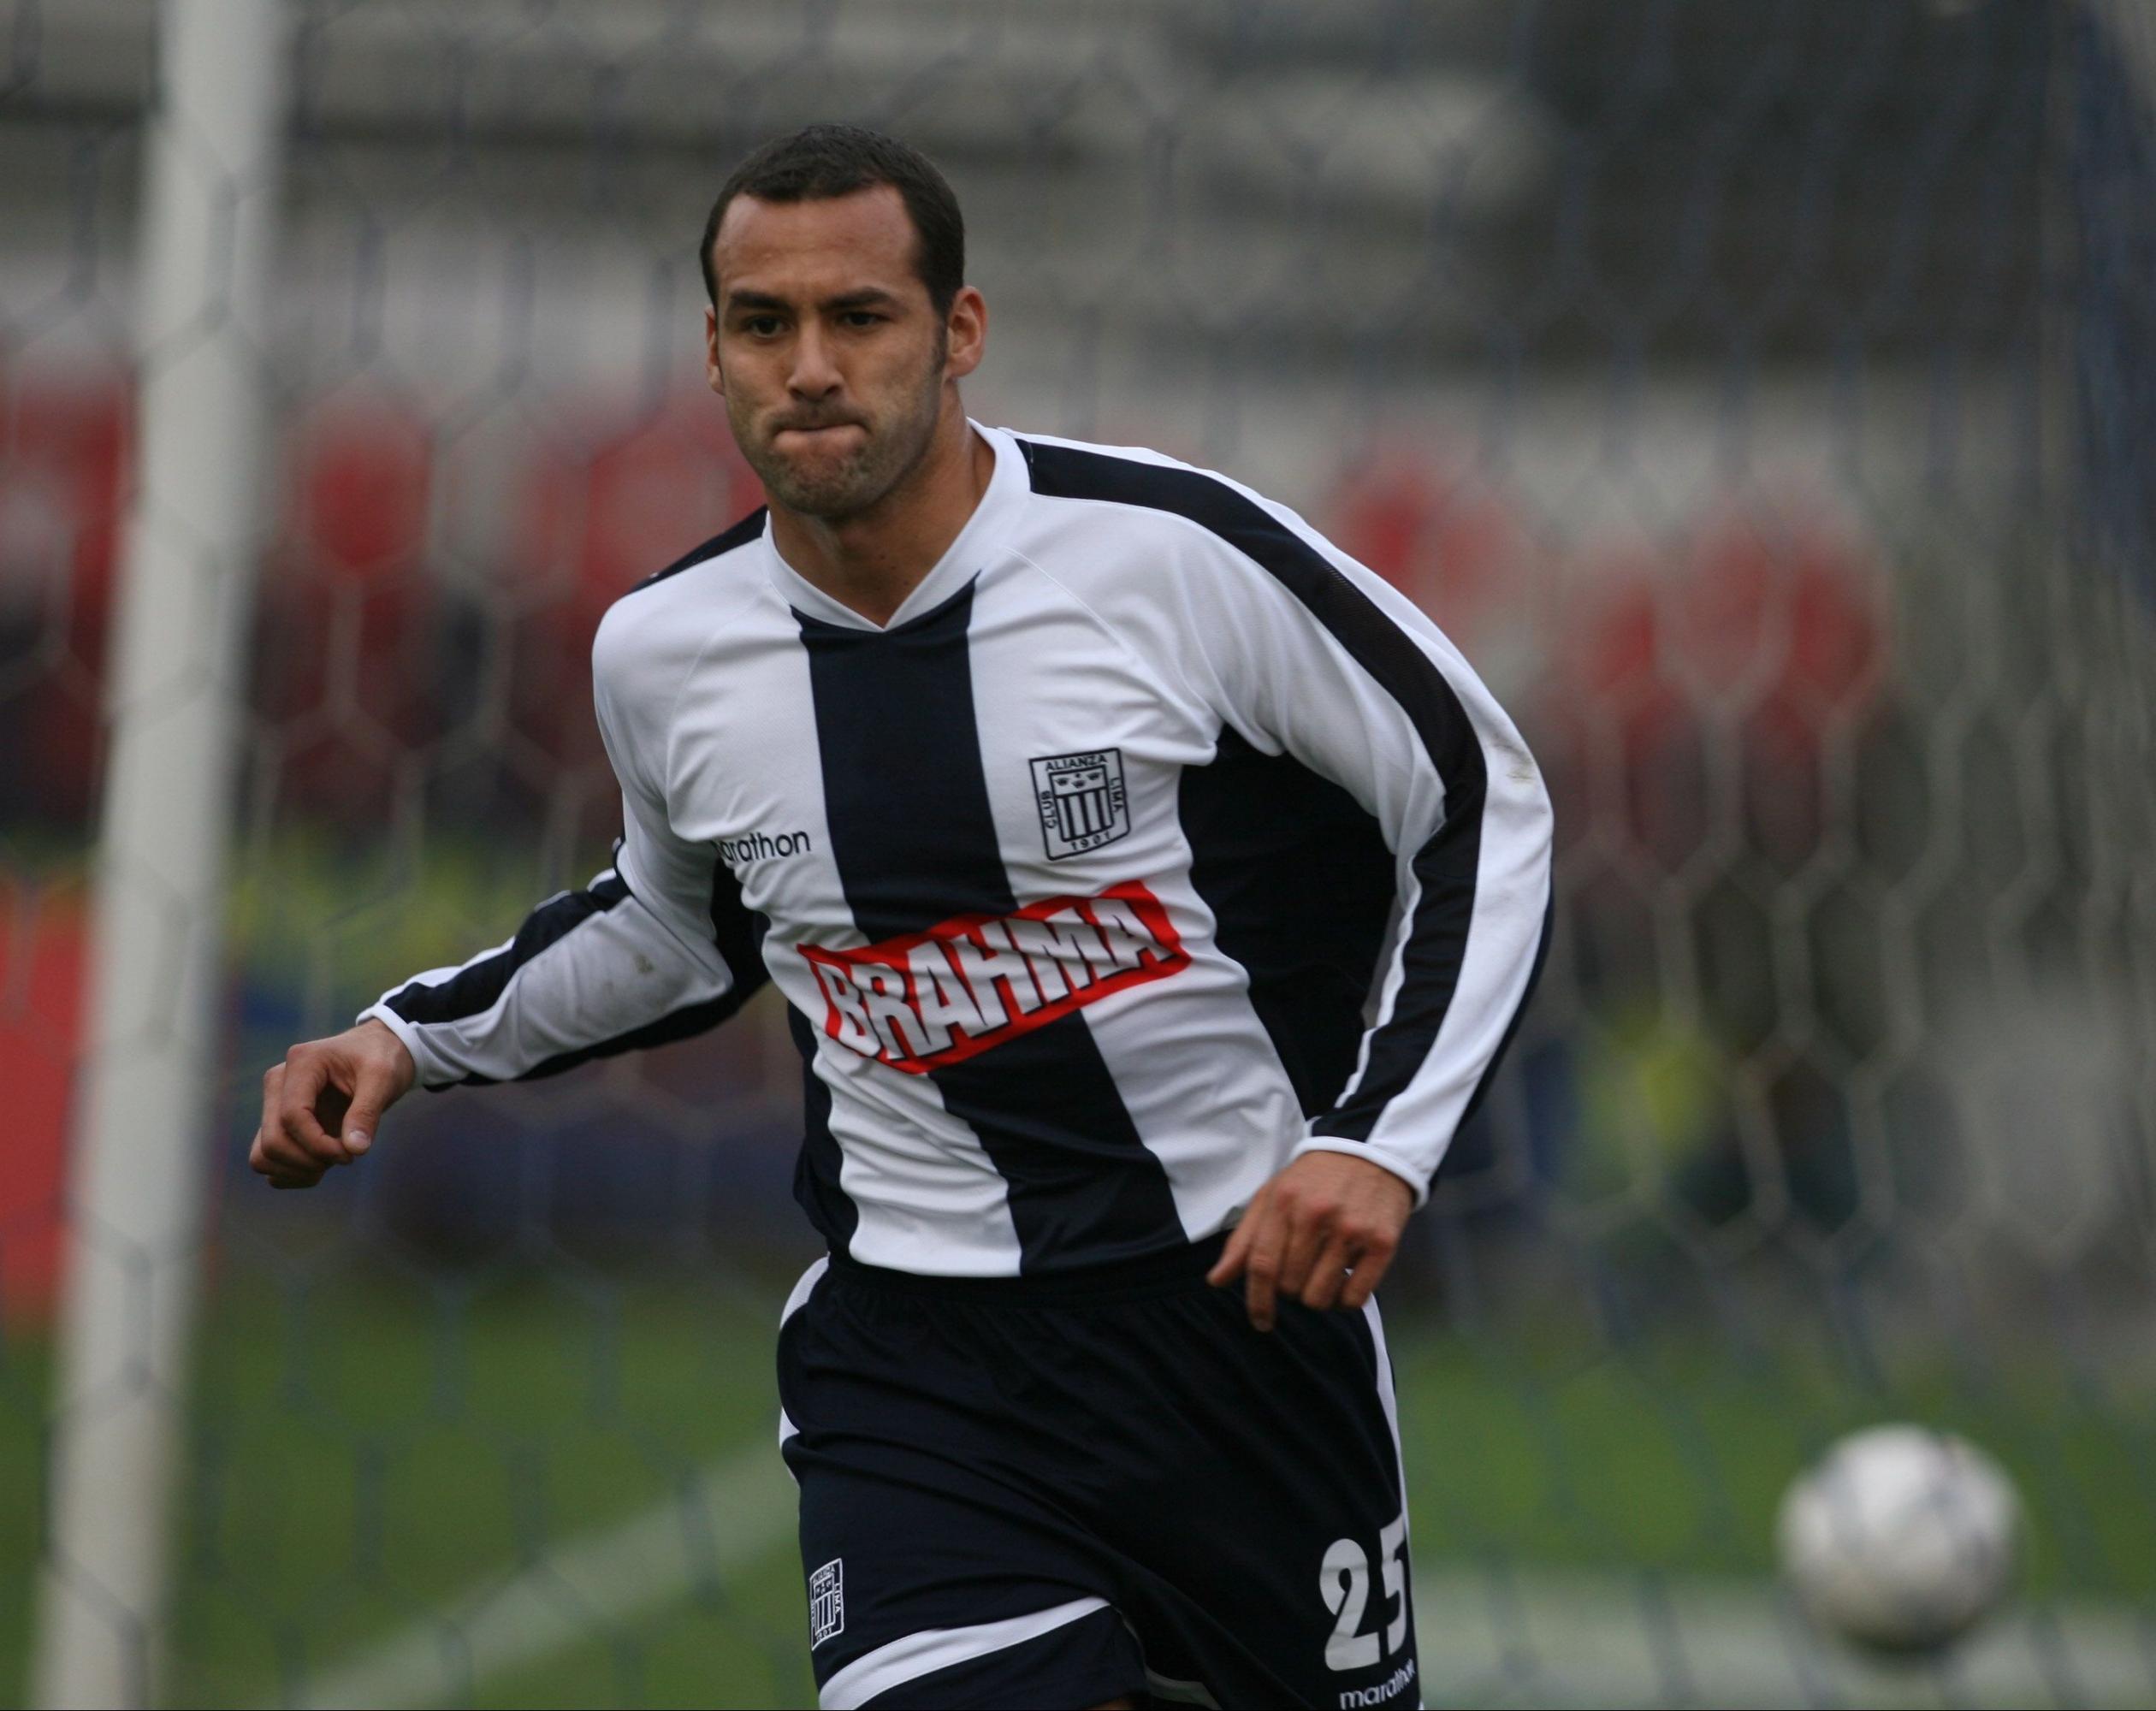 Roberto Silva llegó a jugar por Alianza Lima, Sporting Cristal, Werder Bremen, entre otros clubes, así como por Perú. Antes, el delantero integró la selección de vóley. (Foto: El Comercio)